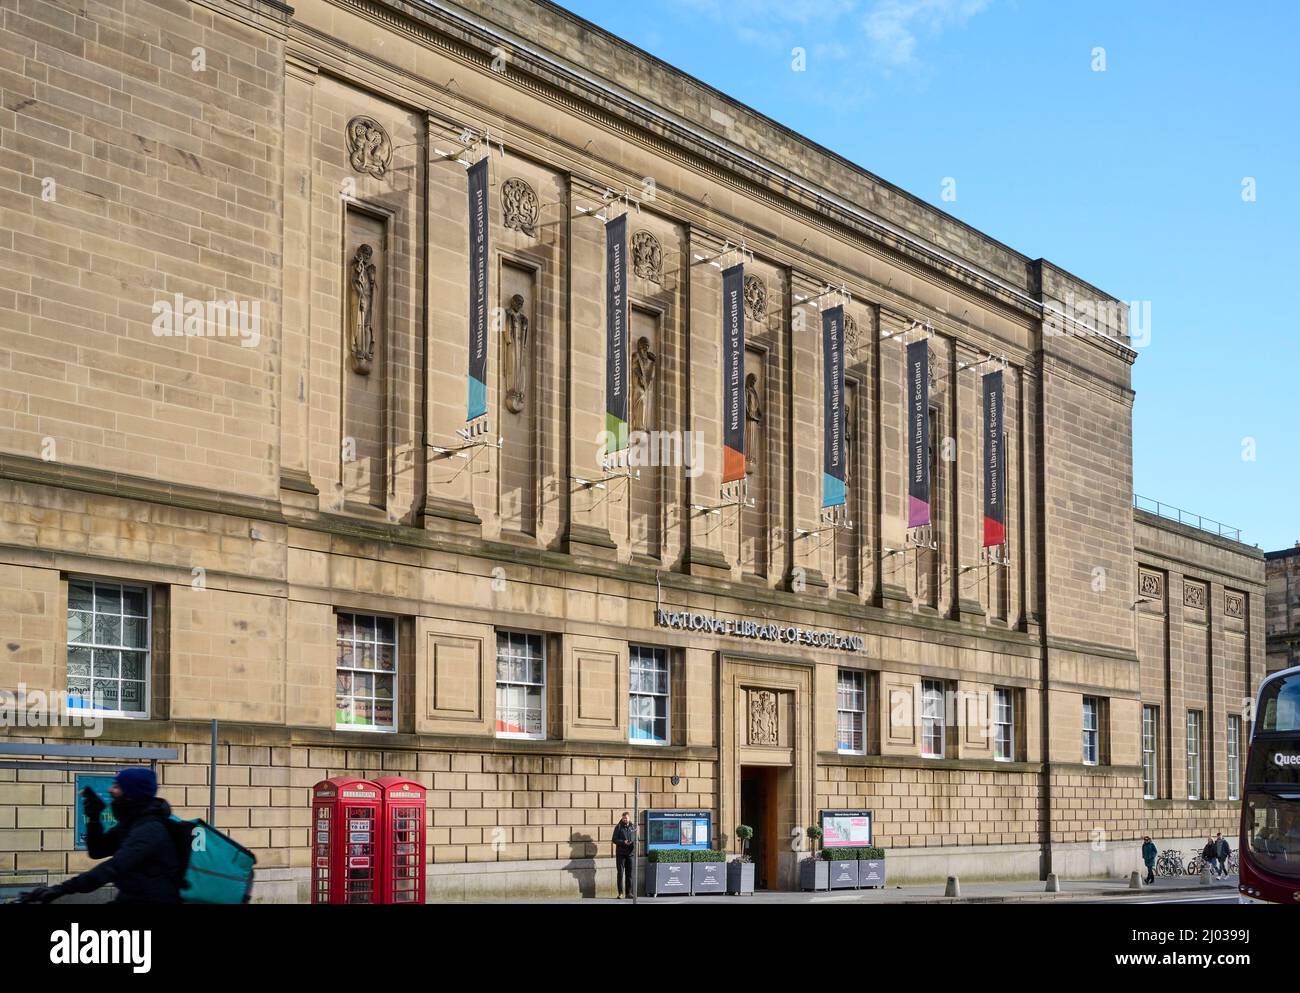 La impresionante fachada de la Biblioteca Nacional de Escocia, Edimburgo, Escocia, Reino Unido Foto de stock